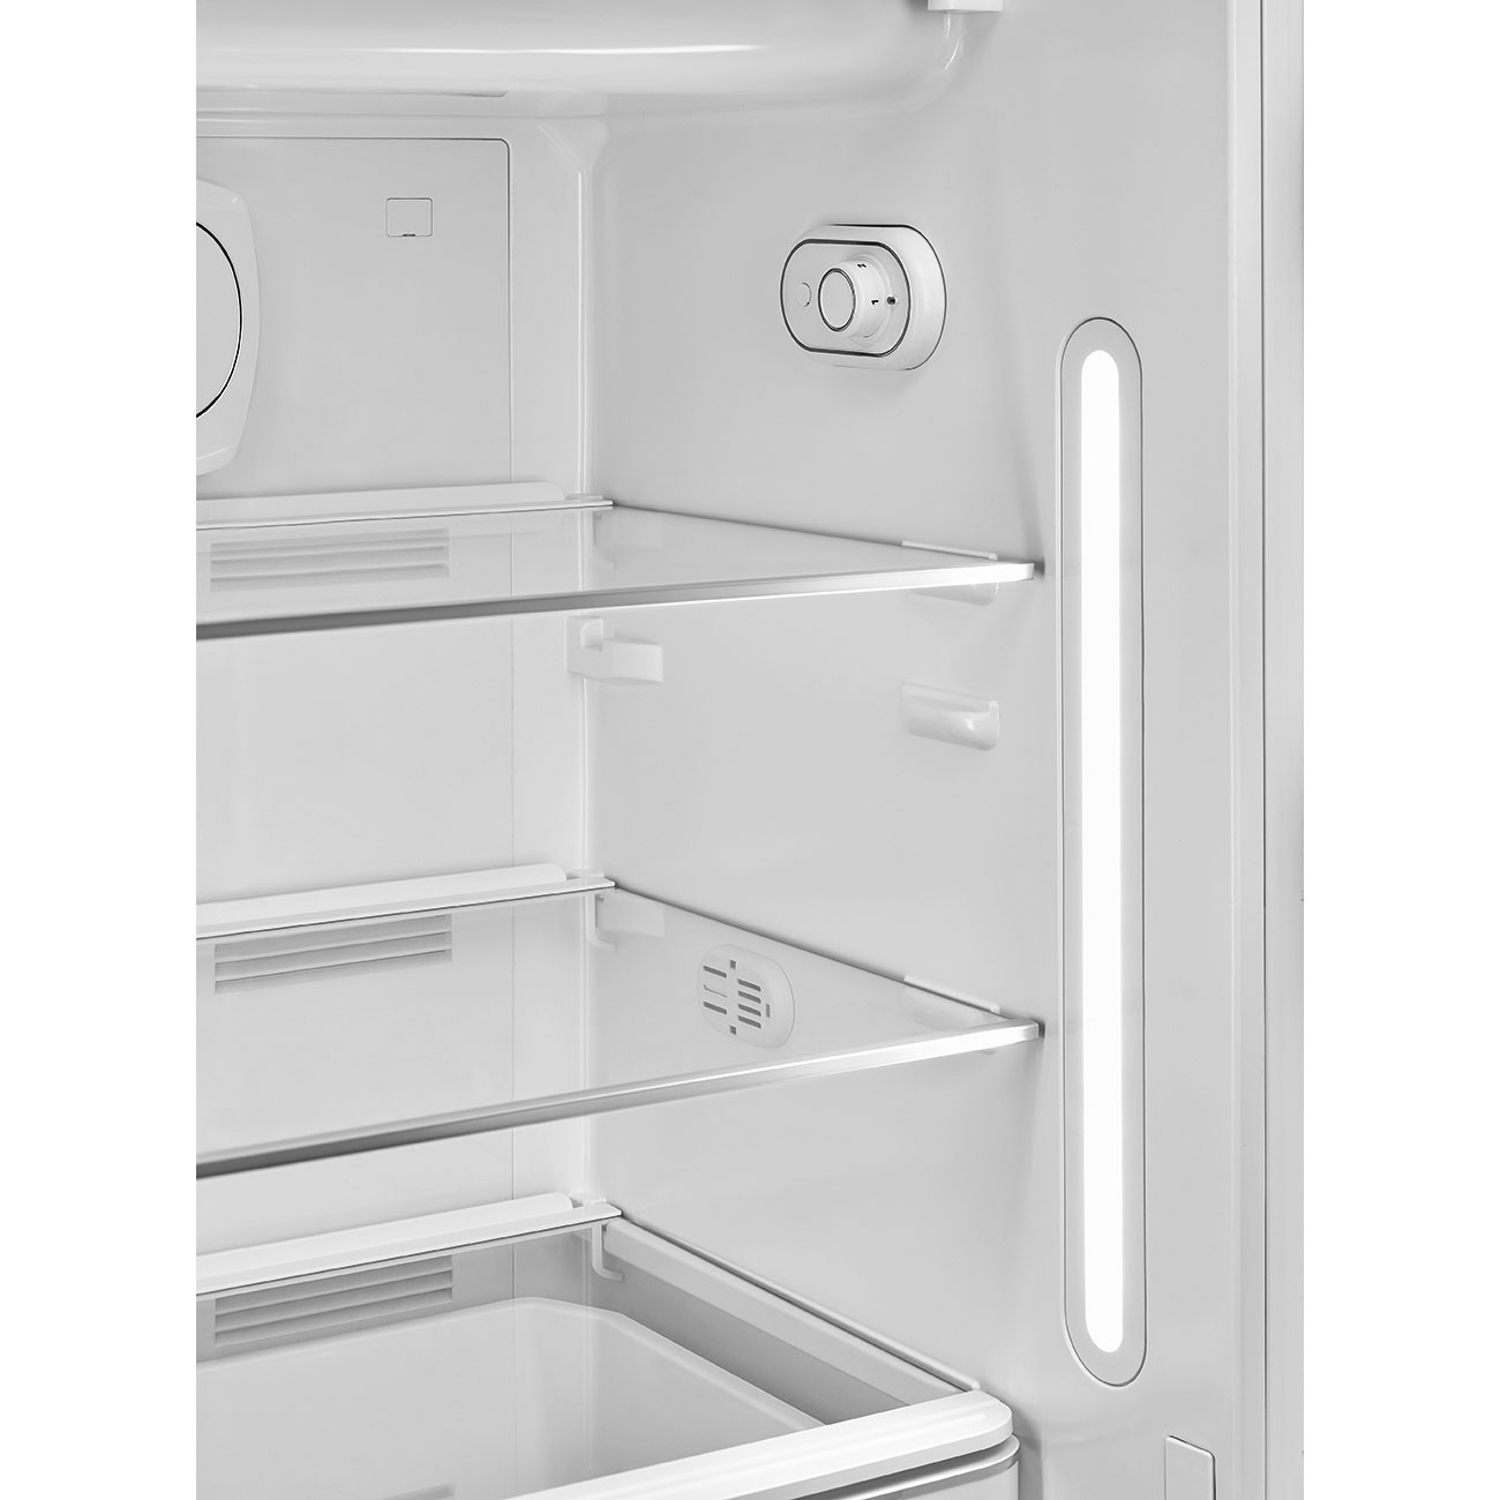 Tủ lạnh SMEG, cửa đơn, độc lập, 50’S STYLE FAB28RBL3 535.14.611 trang bị đèn chiếu sáng Led